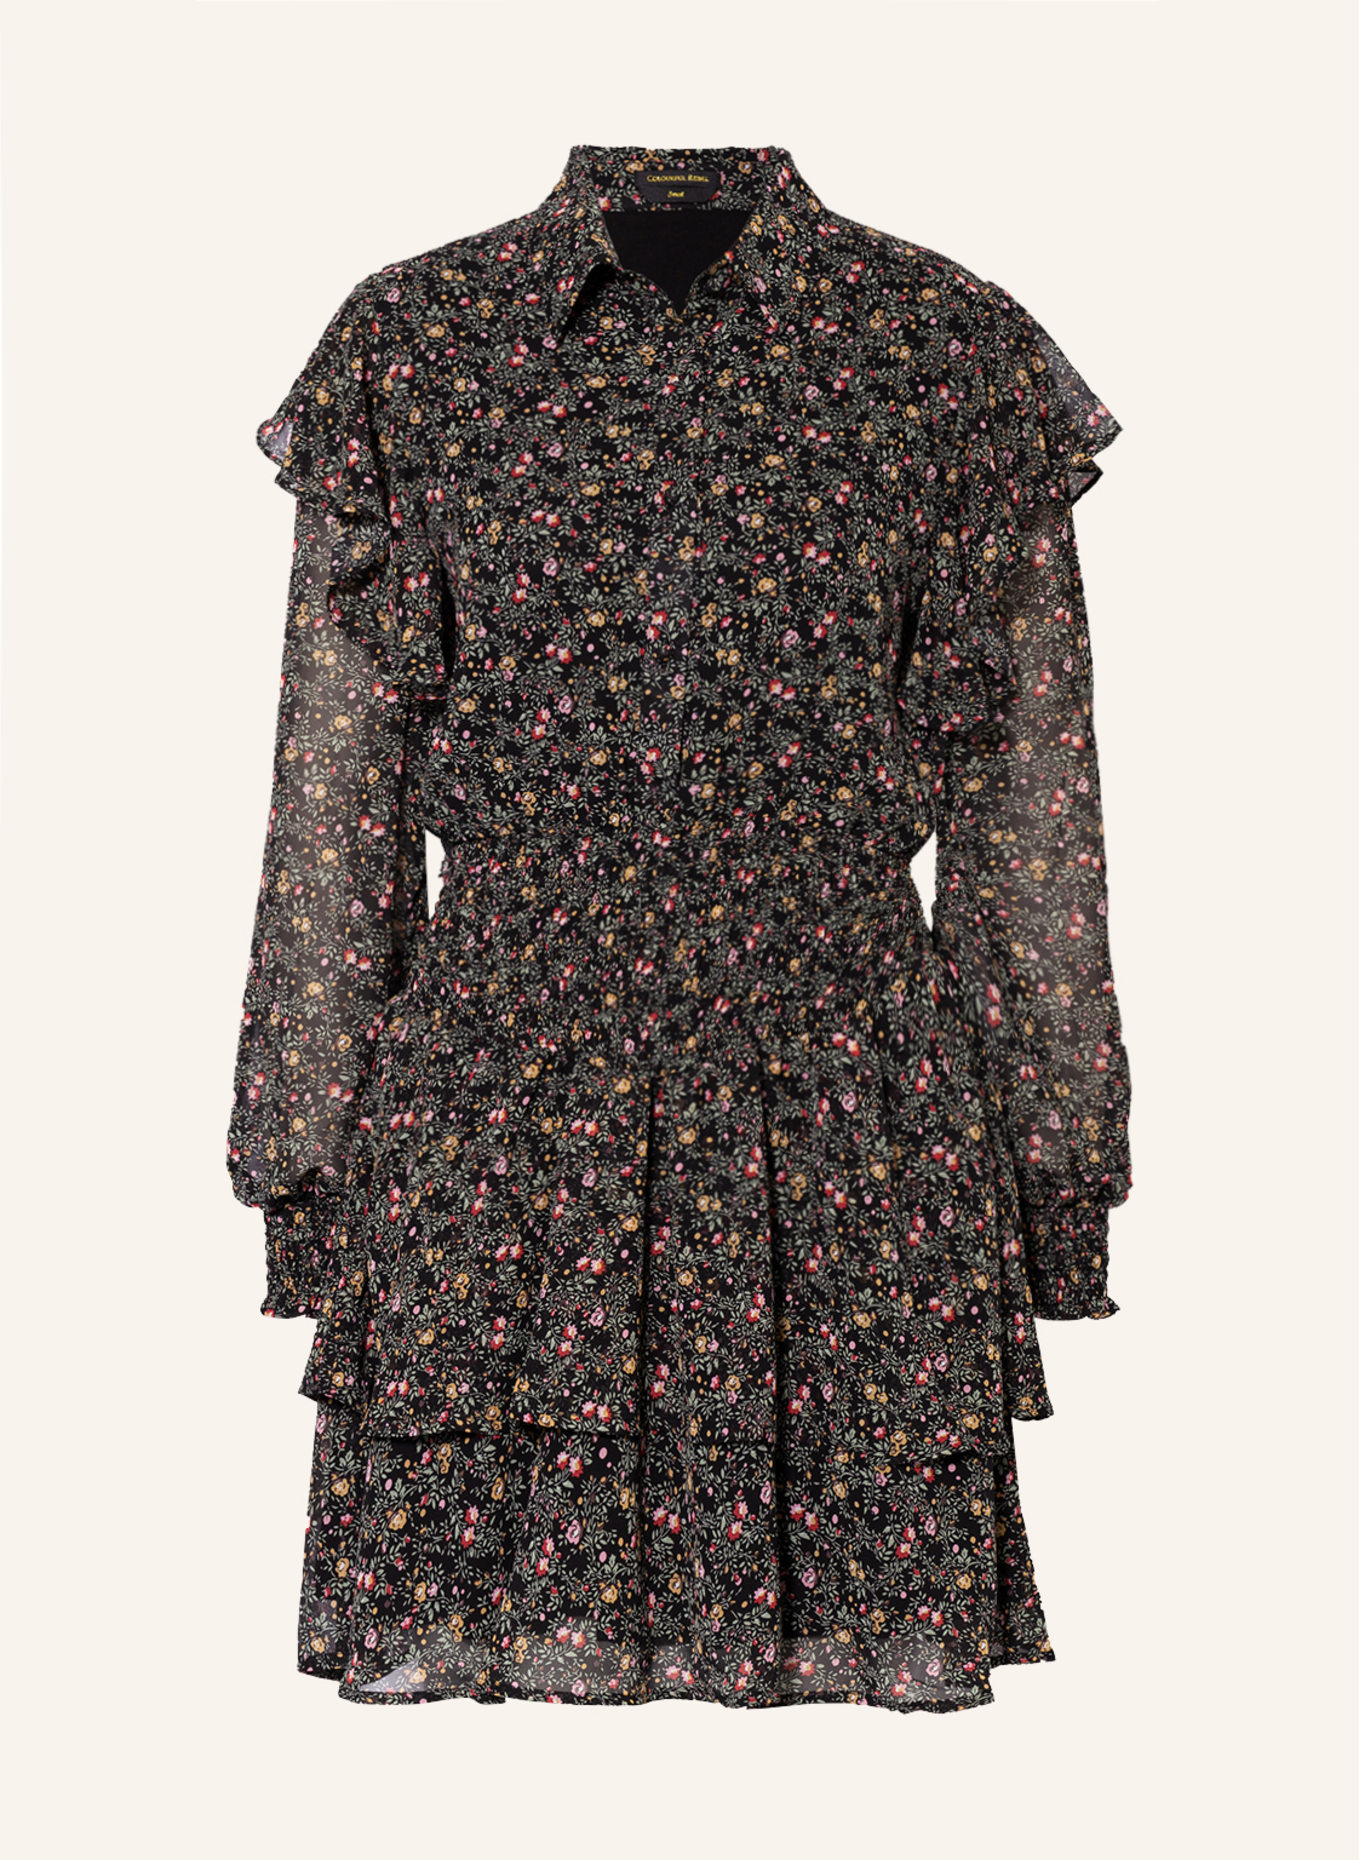 COLOURFUL REBEL Kleid ZINA mit Volants , Farbe: SCHWARZ/ HELLGRÜN/ HELLROT (Bild 1)